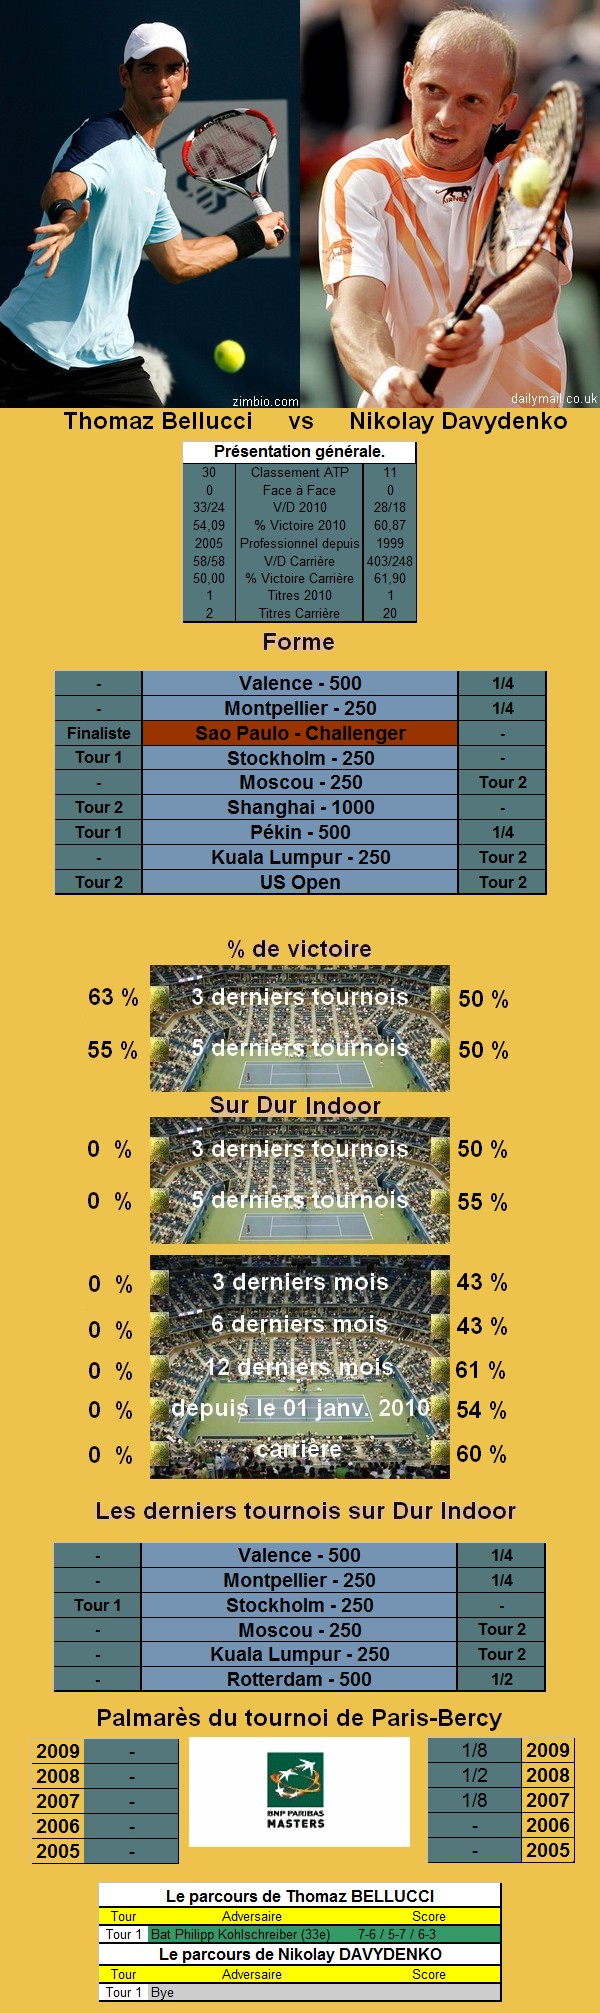 Statistiques tennis de Bellucci contre Davydenko à Paris Bercy